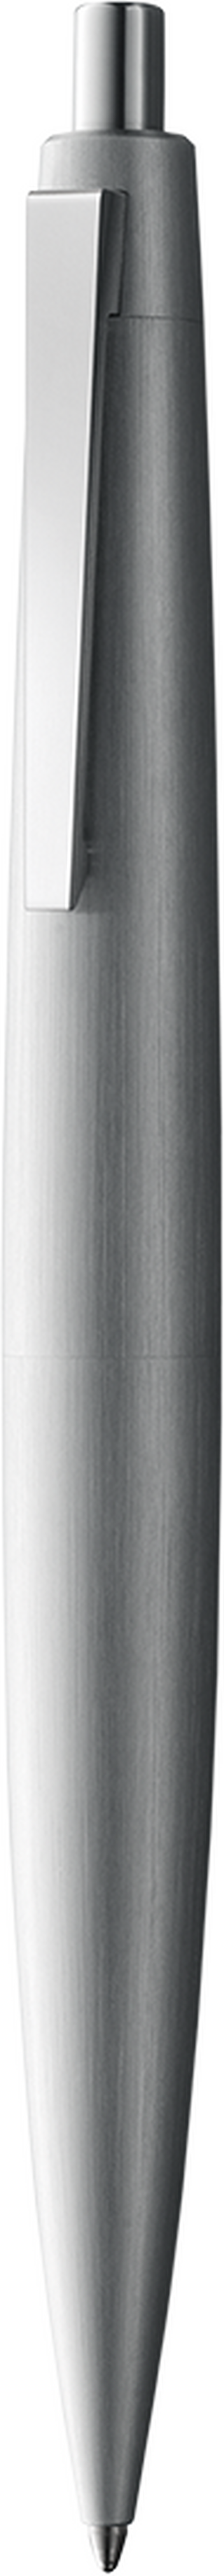 Kugelschreiber LAMY 2000 silver M-schwarz